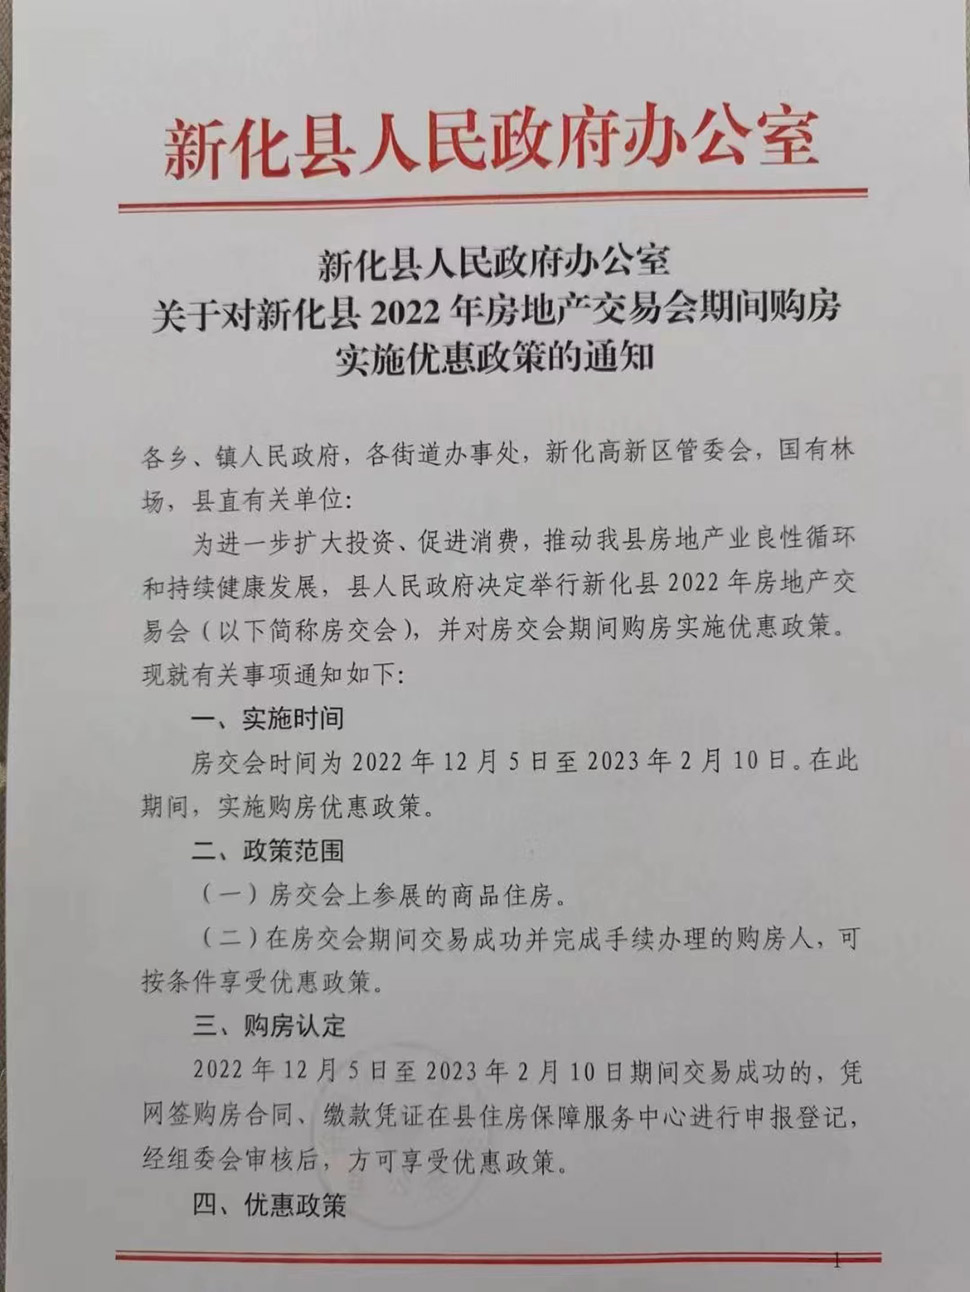 新化县房地产交易会从12月5日开始